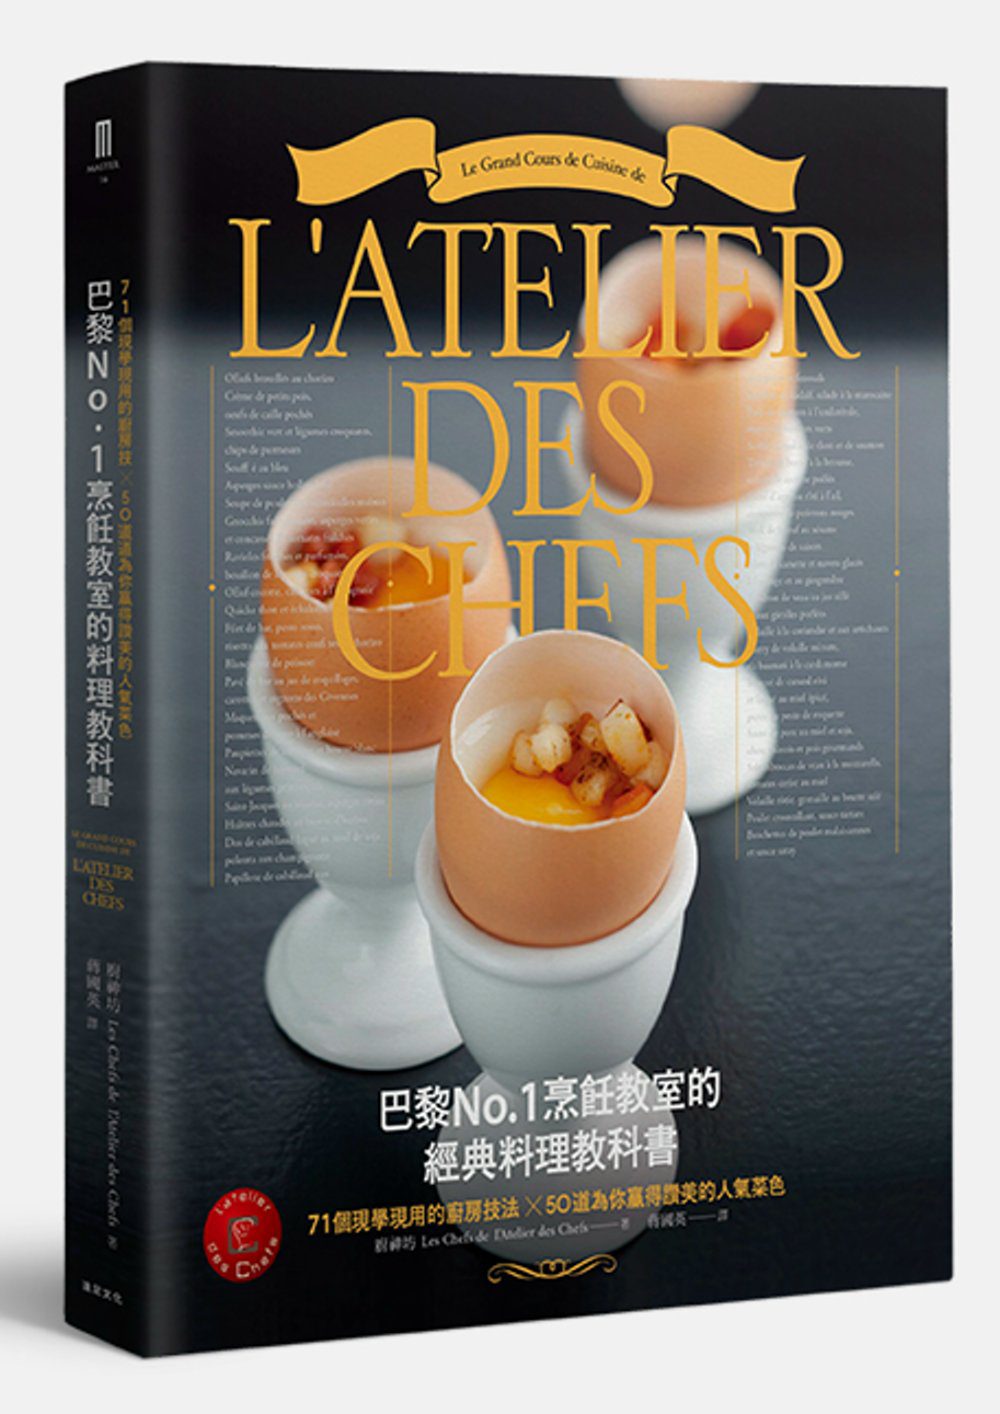 巴黎No.1烹飪教室的經典料理教科書：71個現學現用的廚房技法╳50道為你贏得讚美的人氣菜色